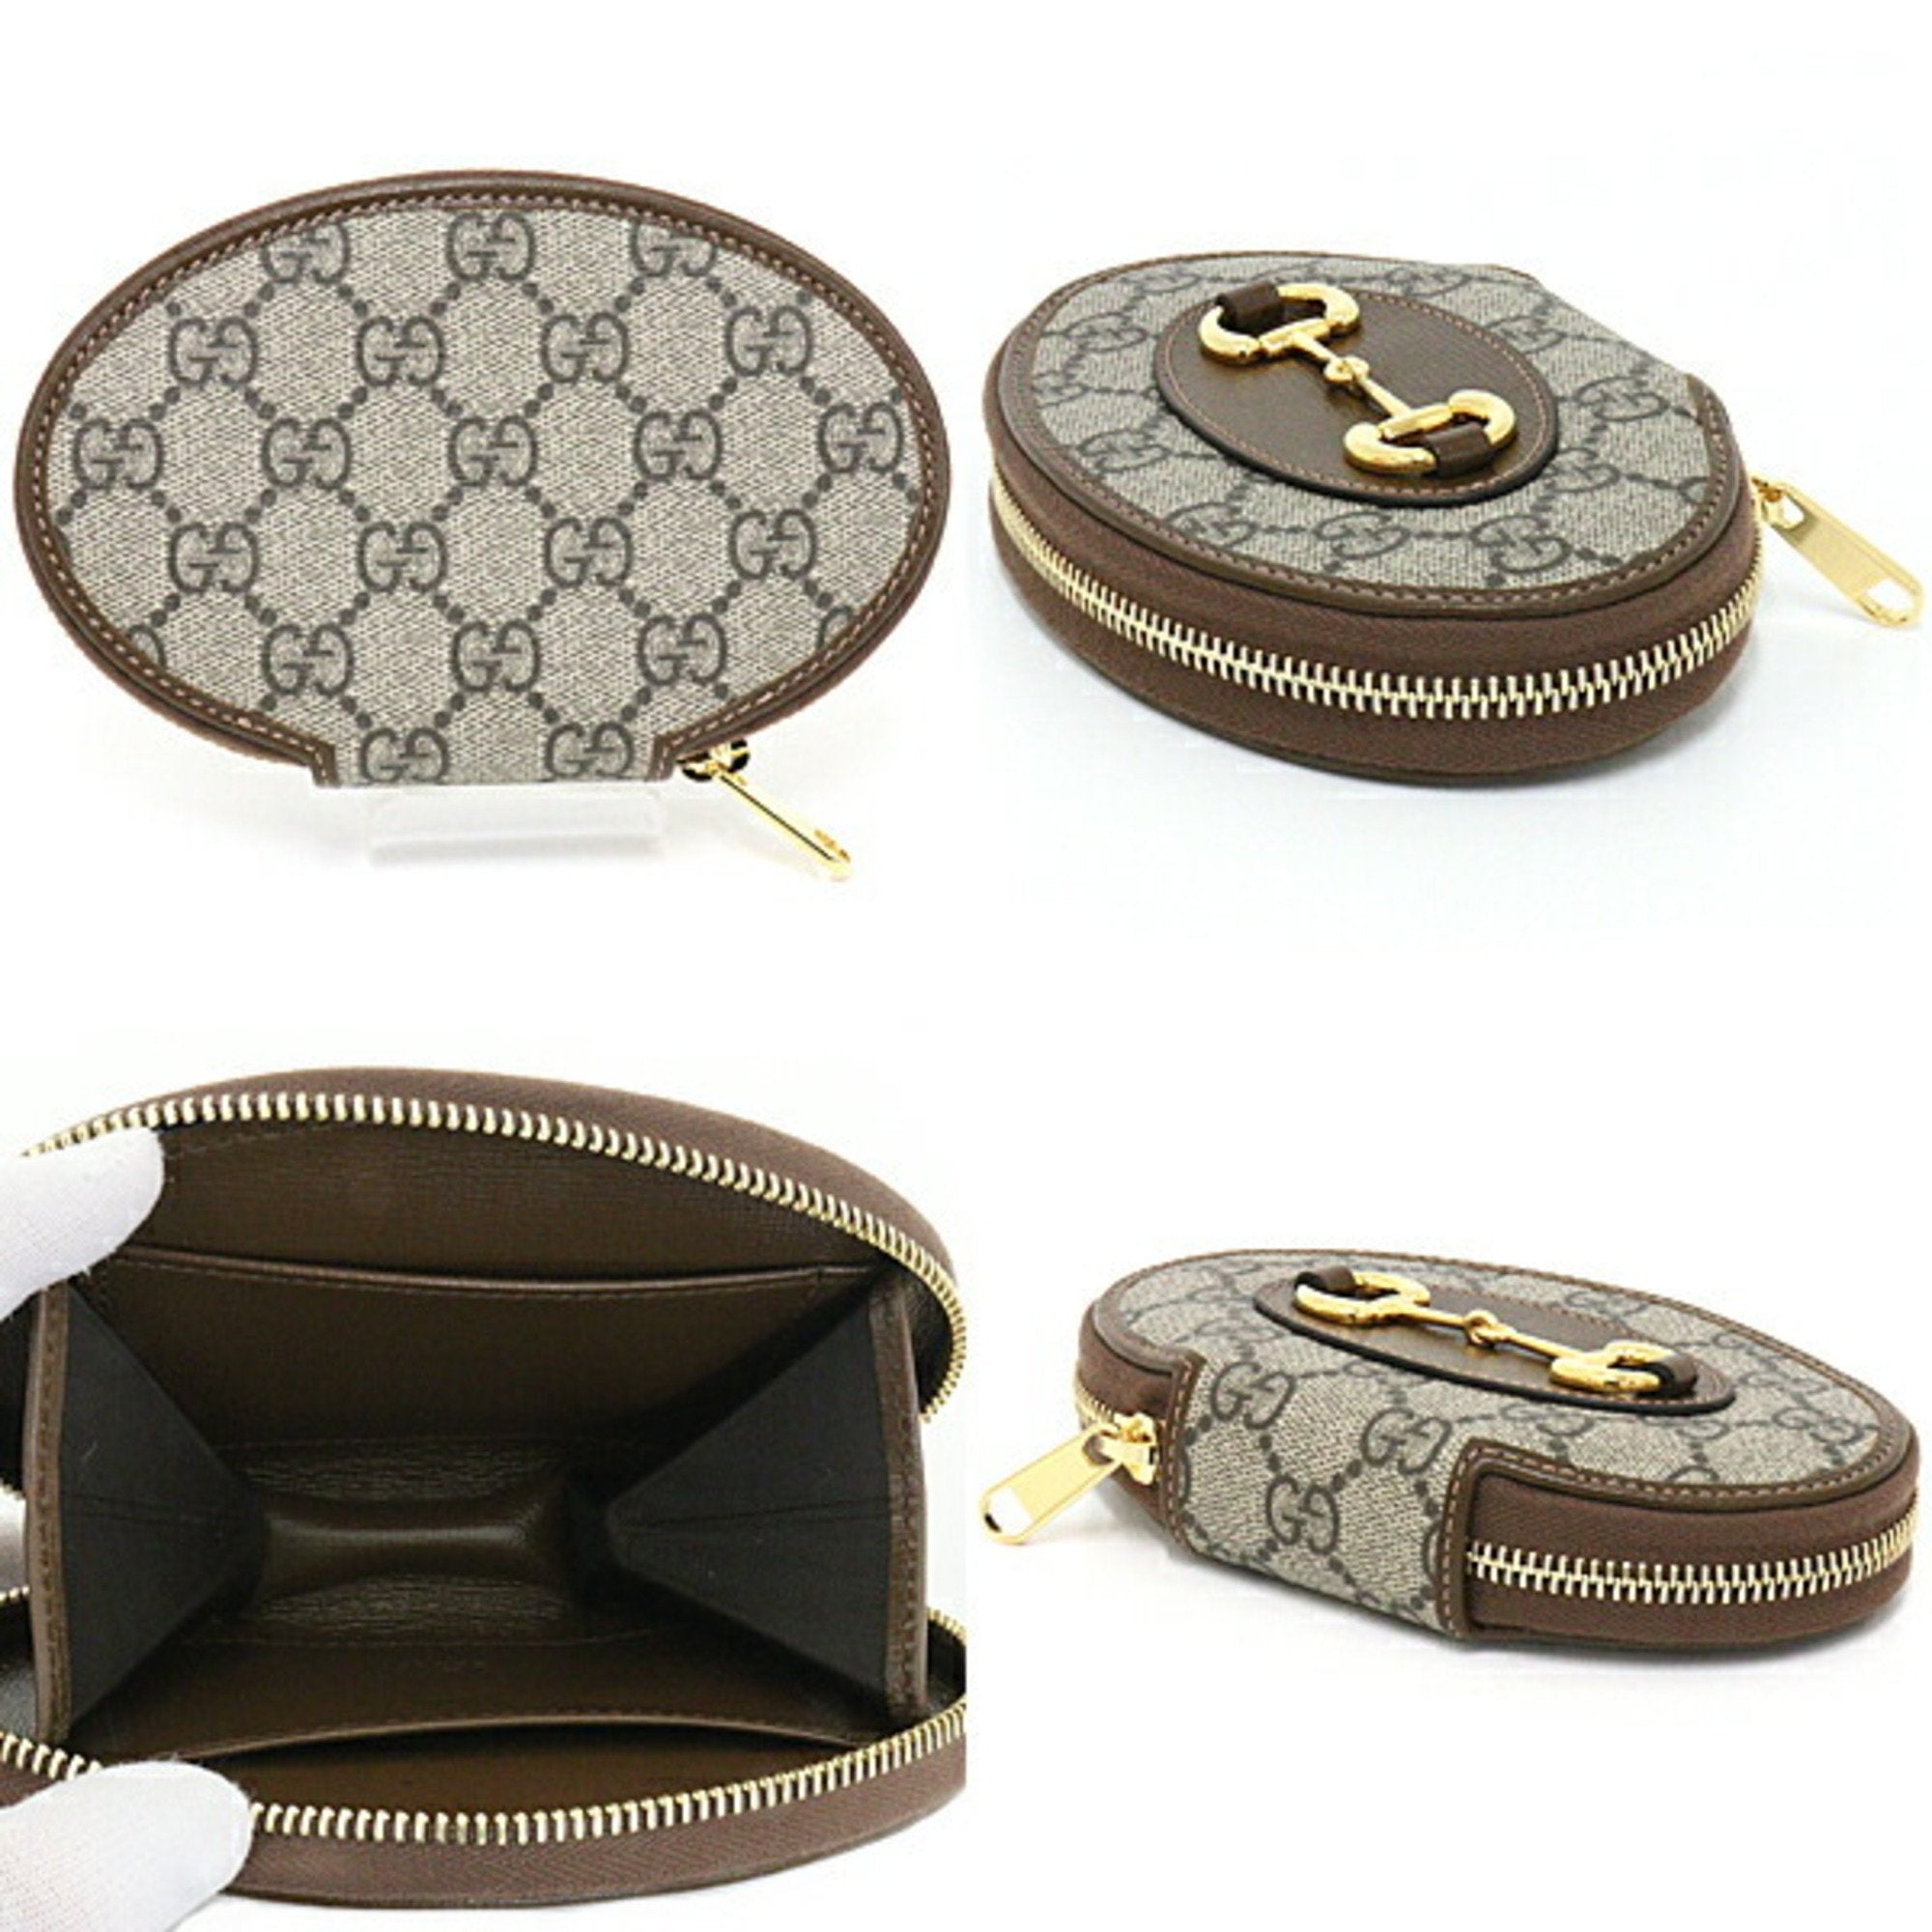 Gucci coin purse black - Gem